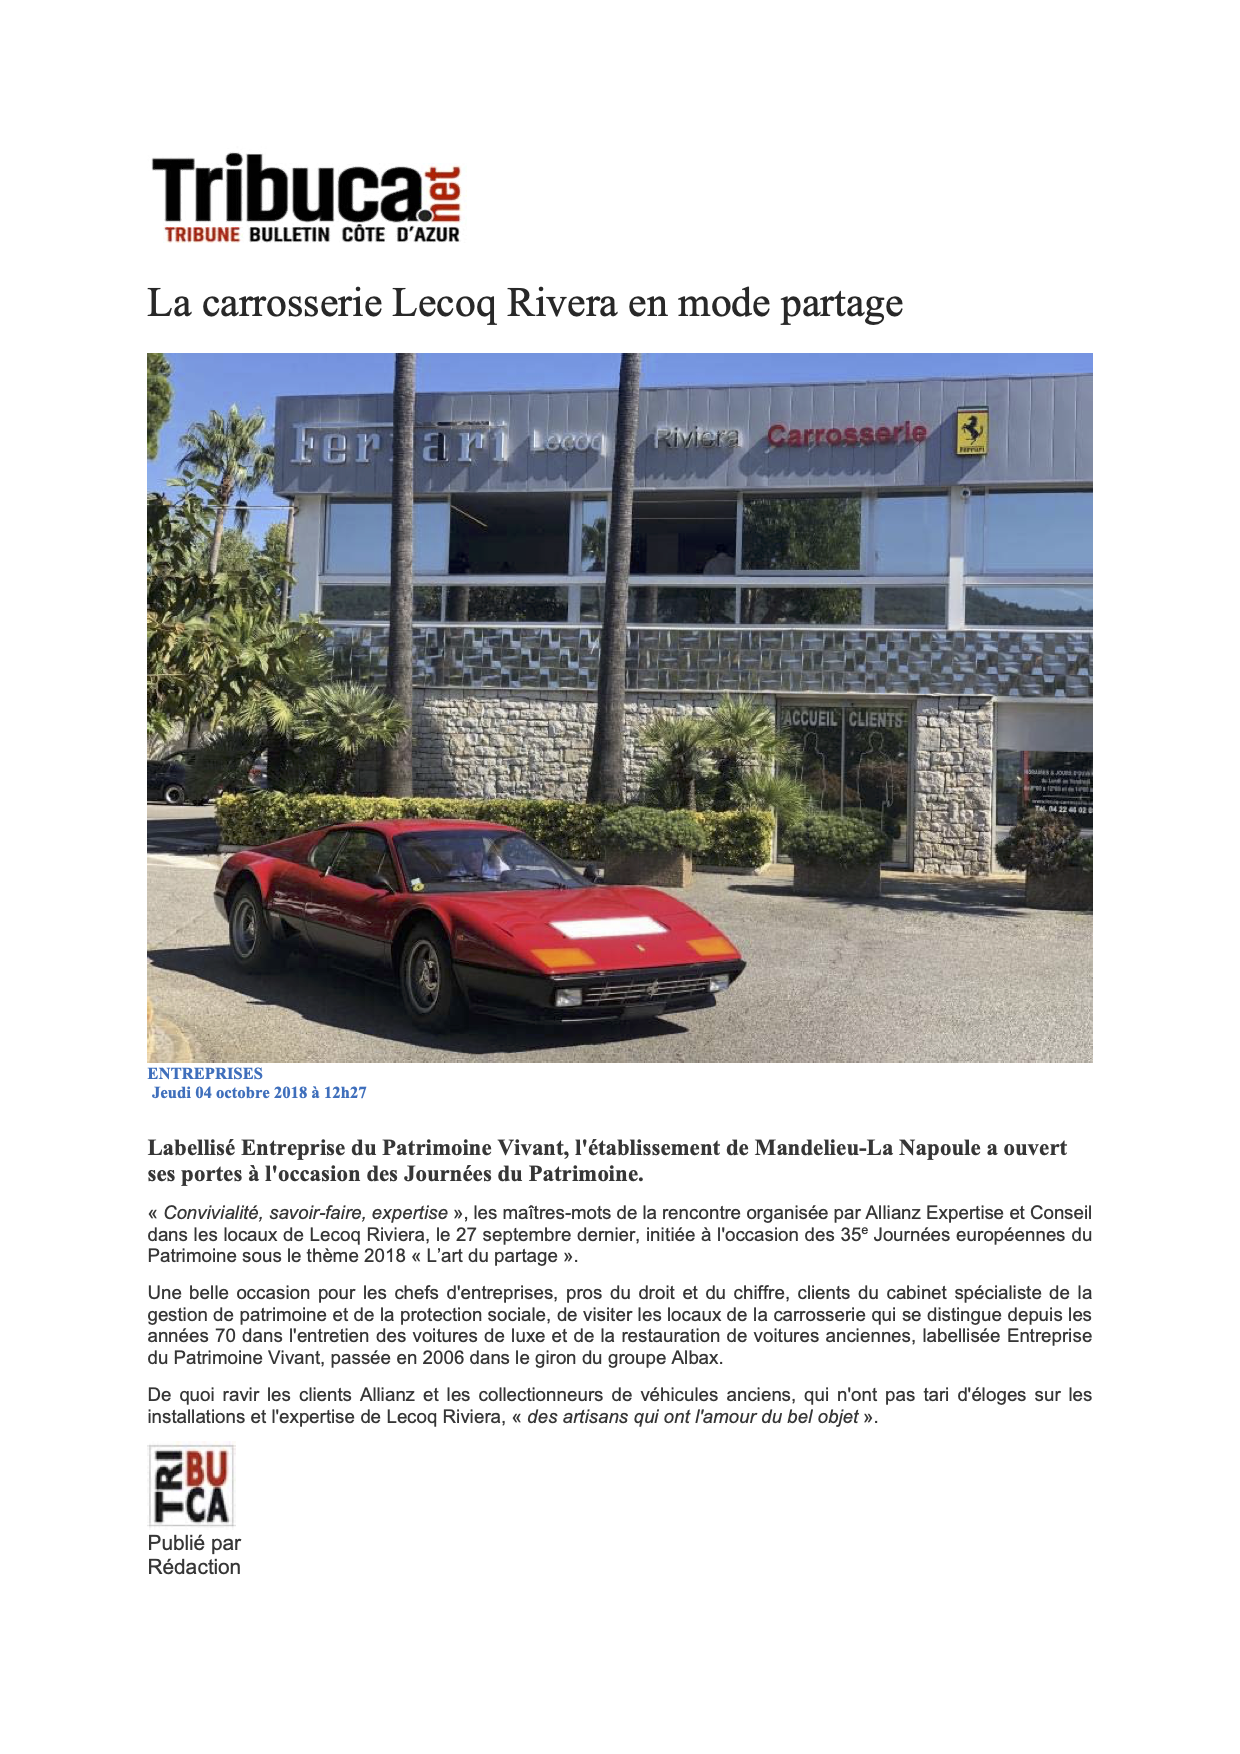 Tribune Bulletin Côte d'Azur